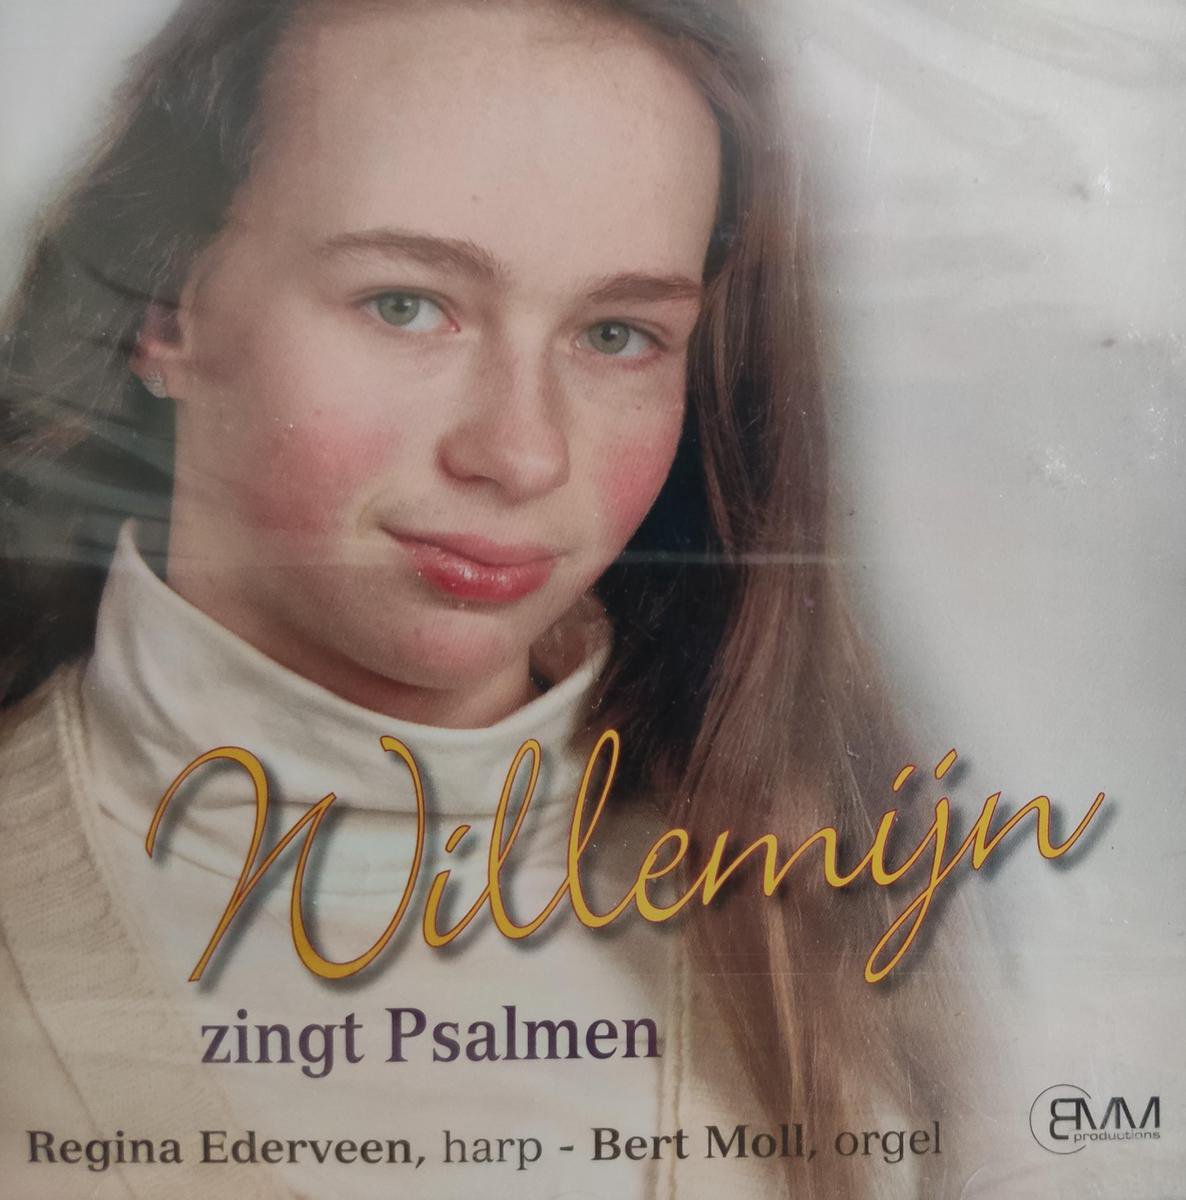 Willemijn - Zingt Psalmen / Regina Ederveen harp - Bert Moll orgel / CD - Willemijn Urk - Christelijk - Jeugd - Solozang - Psalmen - Zang - Gewijd - Nederlandstalig - Willemijn